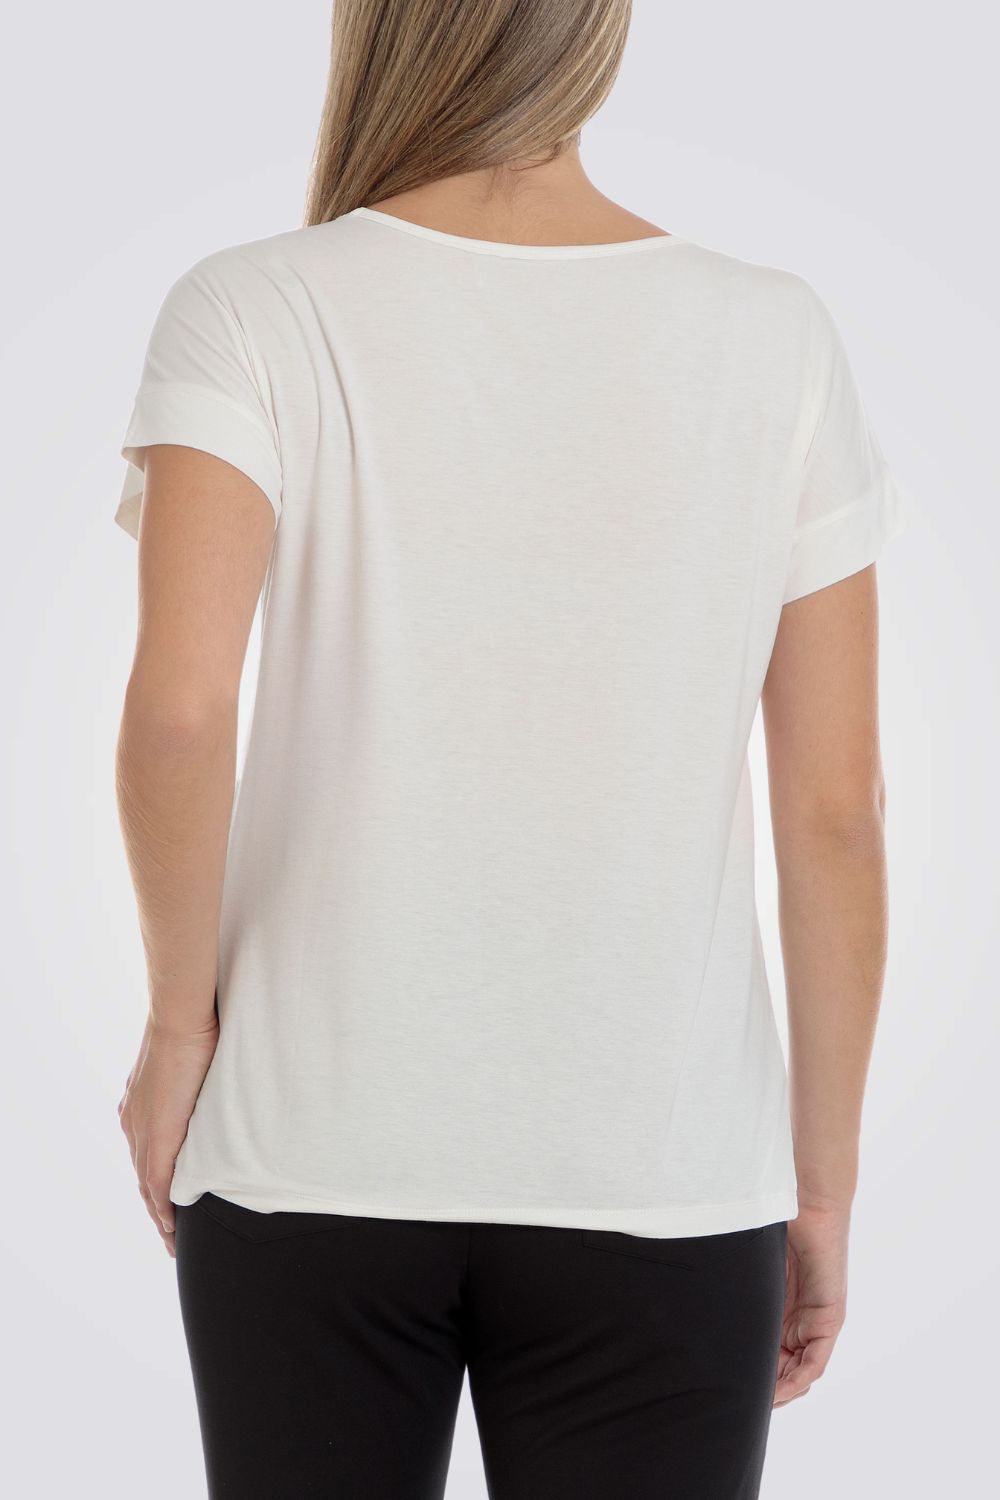 חולצת טי עם שרוולים קצרים בצבע לבן ושחור